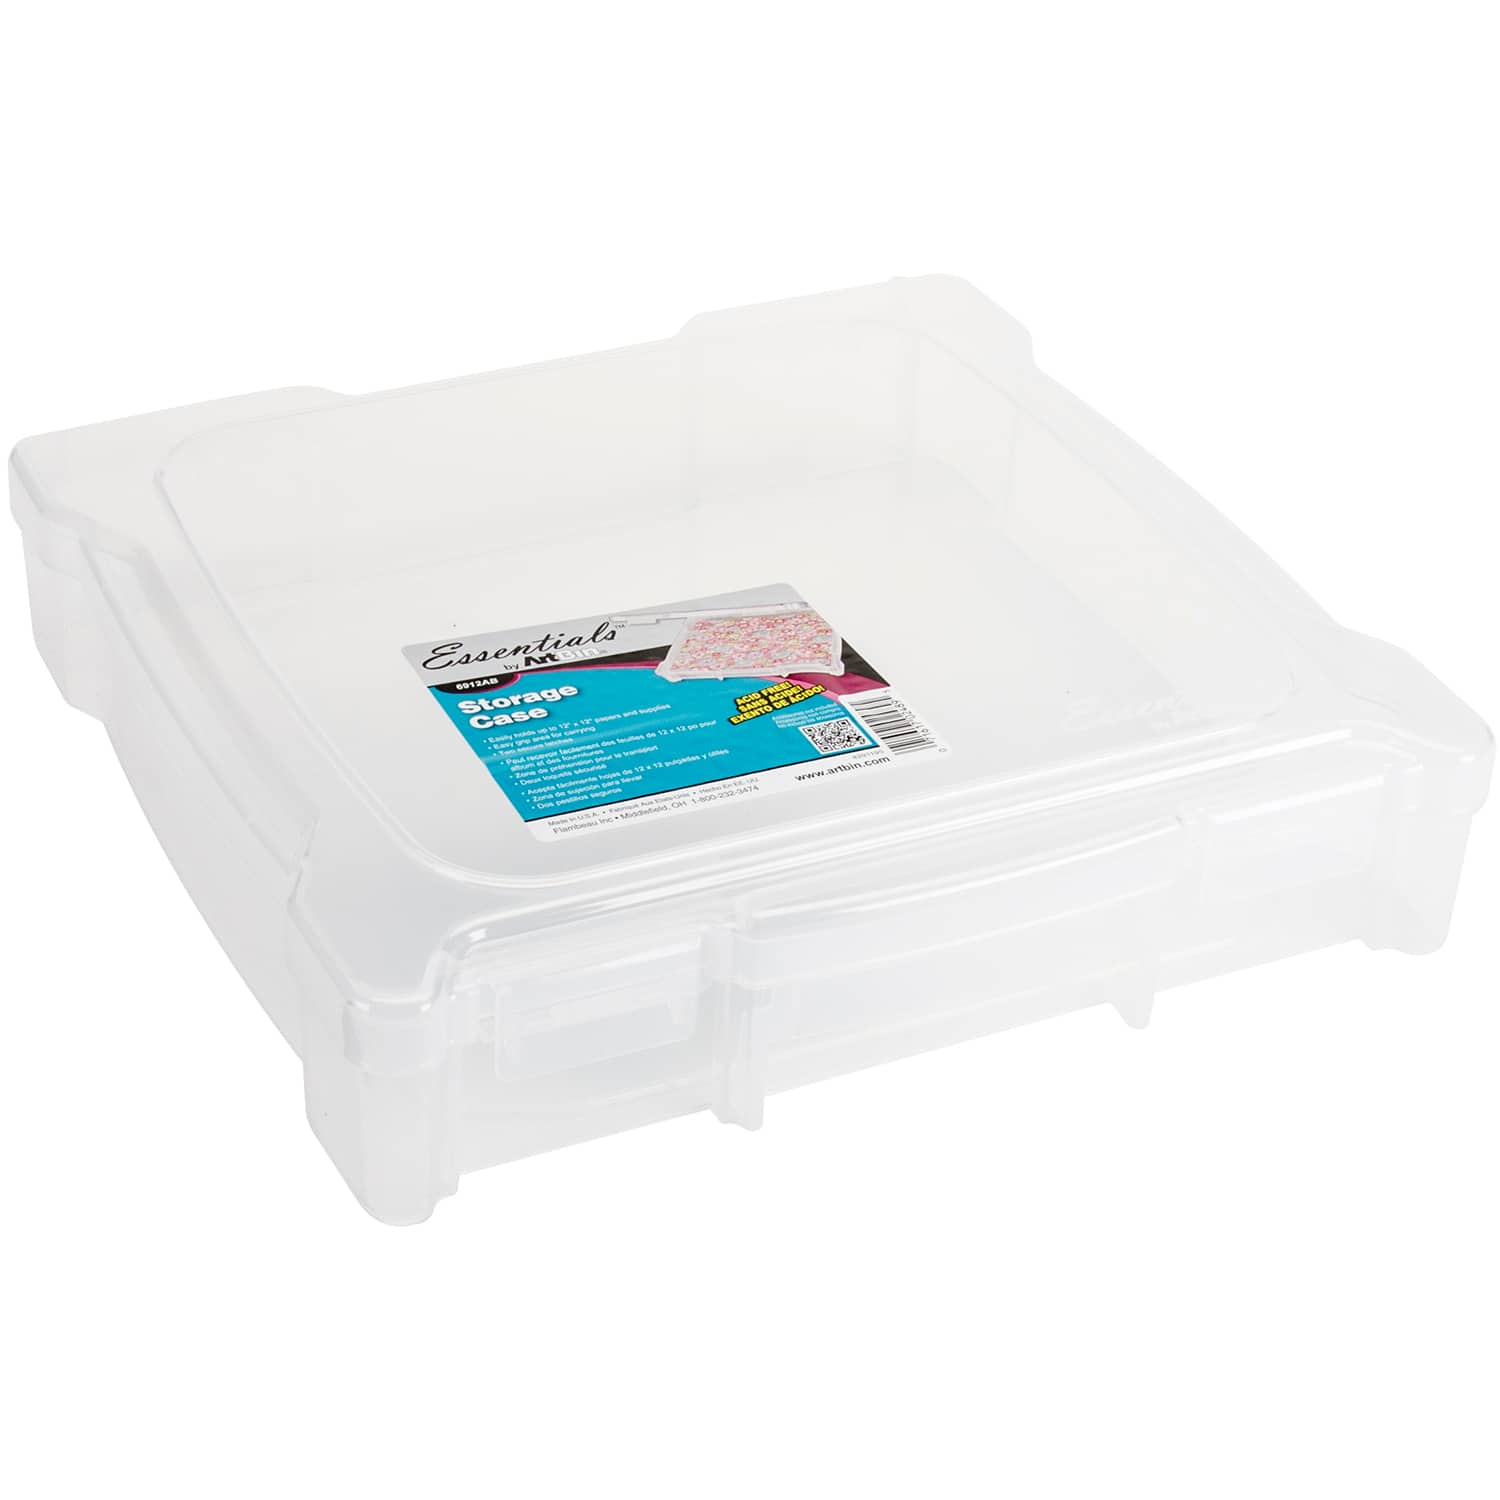 Plastic 14-Compartment Organizer Box - RioGrande